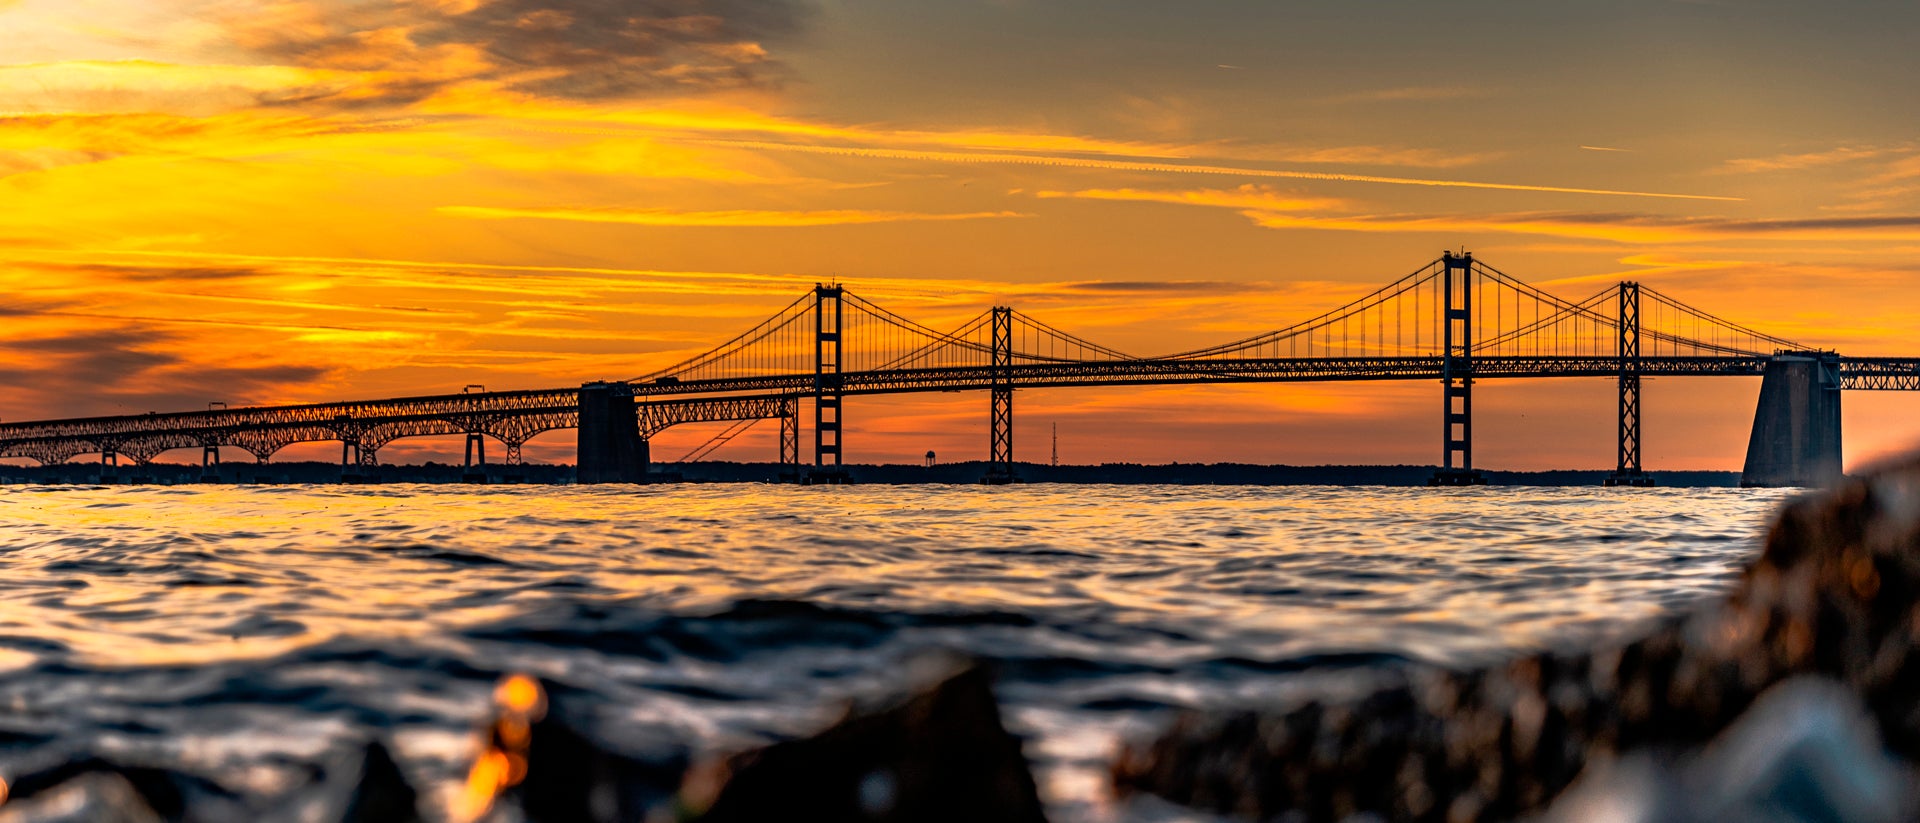 Annapolis bridge at sunset